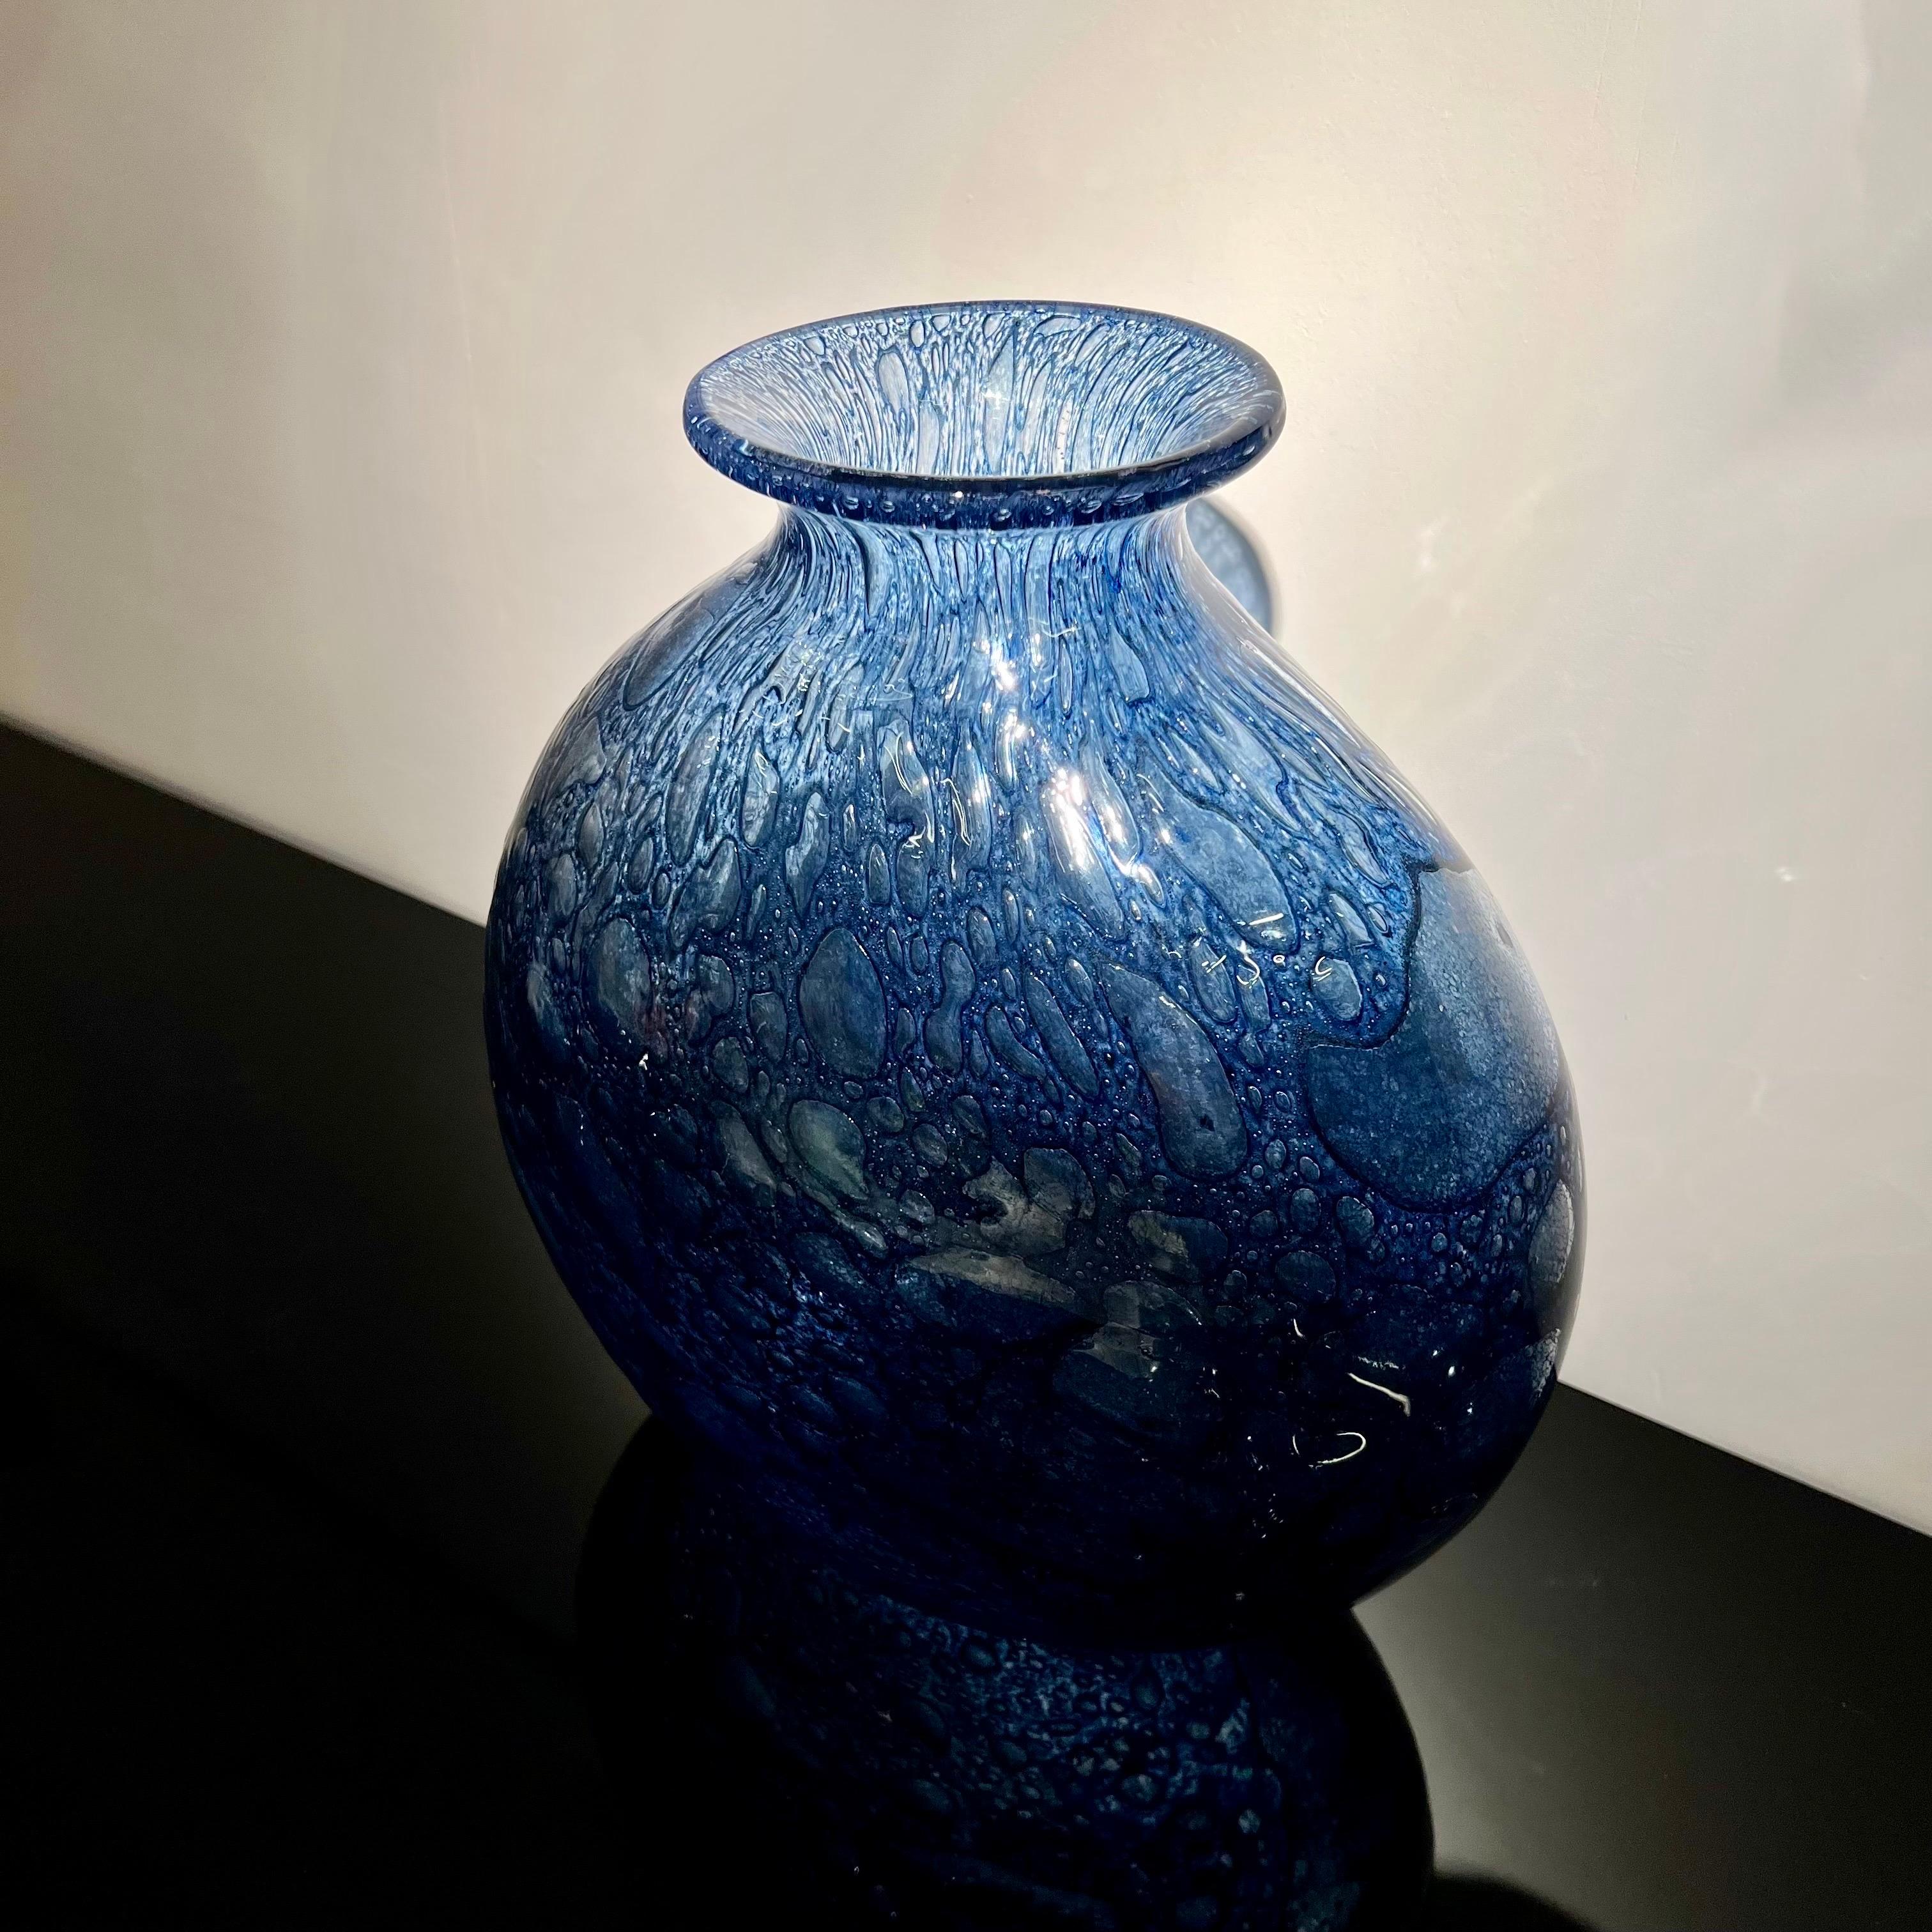 Diese prächtige Vase aus geblasenem Glas ist das Werk des italienischen Künstlers Ercole Barovier.
In einem prächtigen Tiefblau ist dieses Objekt äußerst dekorativ und passt sich gleichzeitig einer Vielzahl von Einrichtungsstilen an.

Ercole